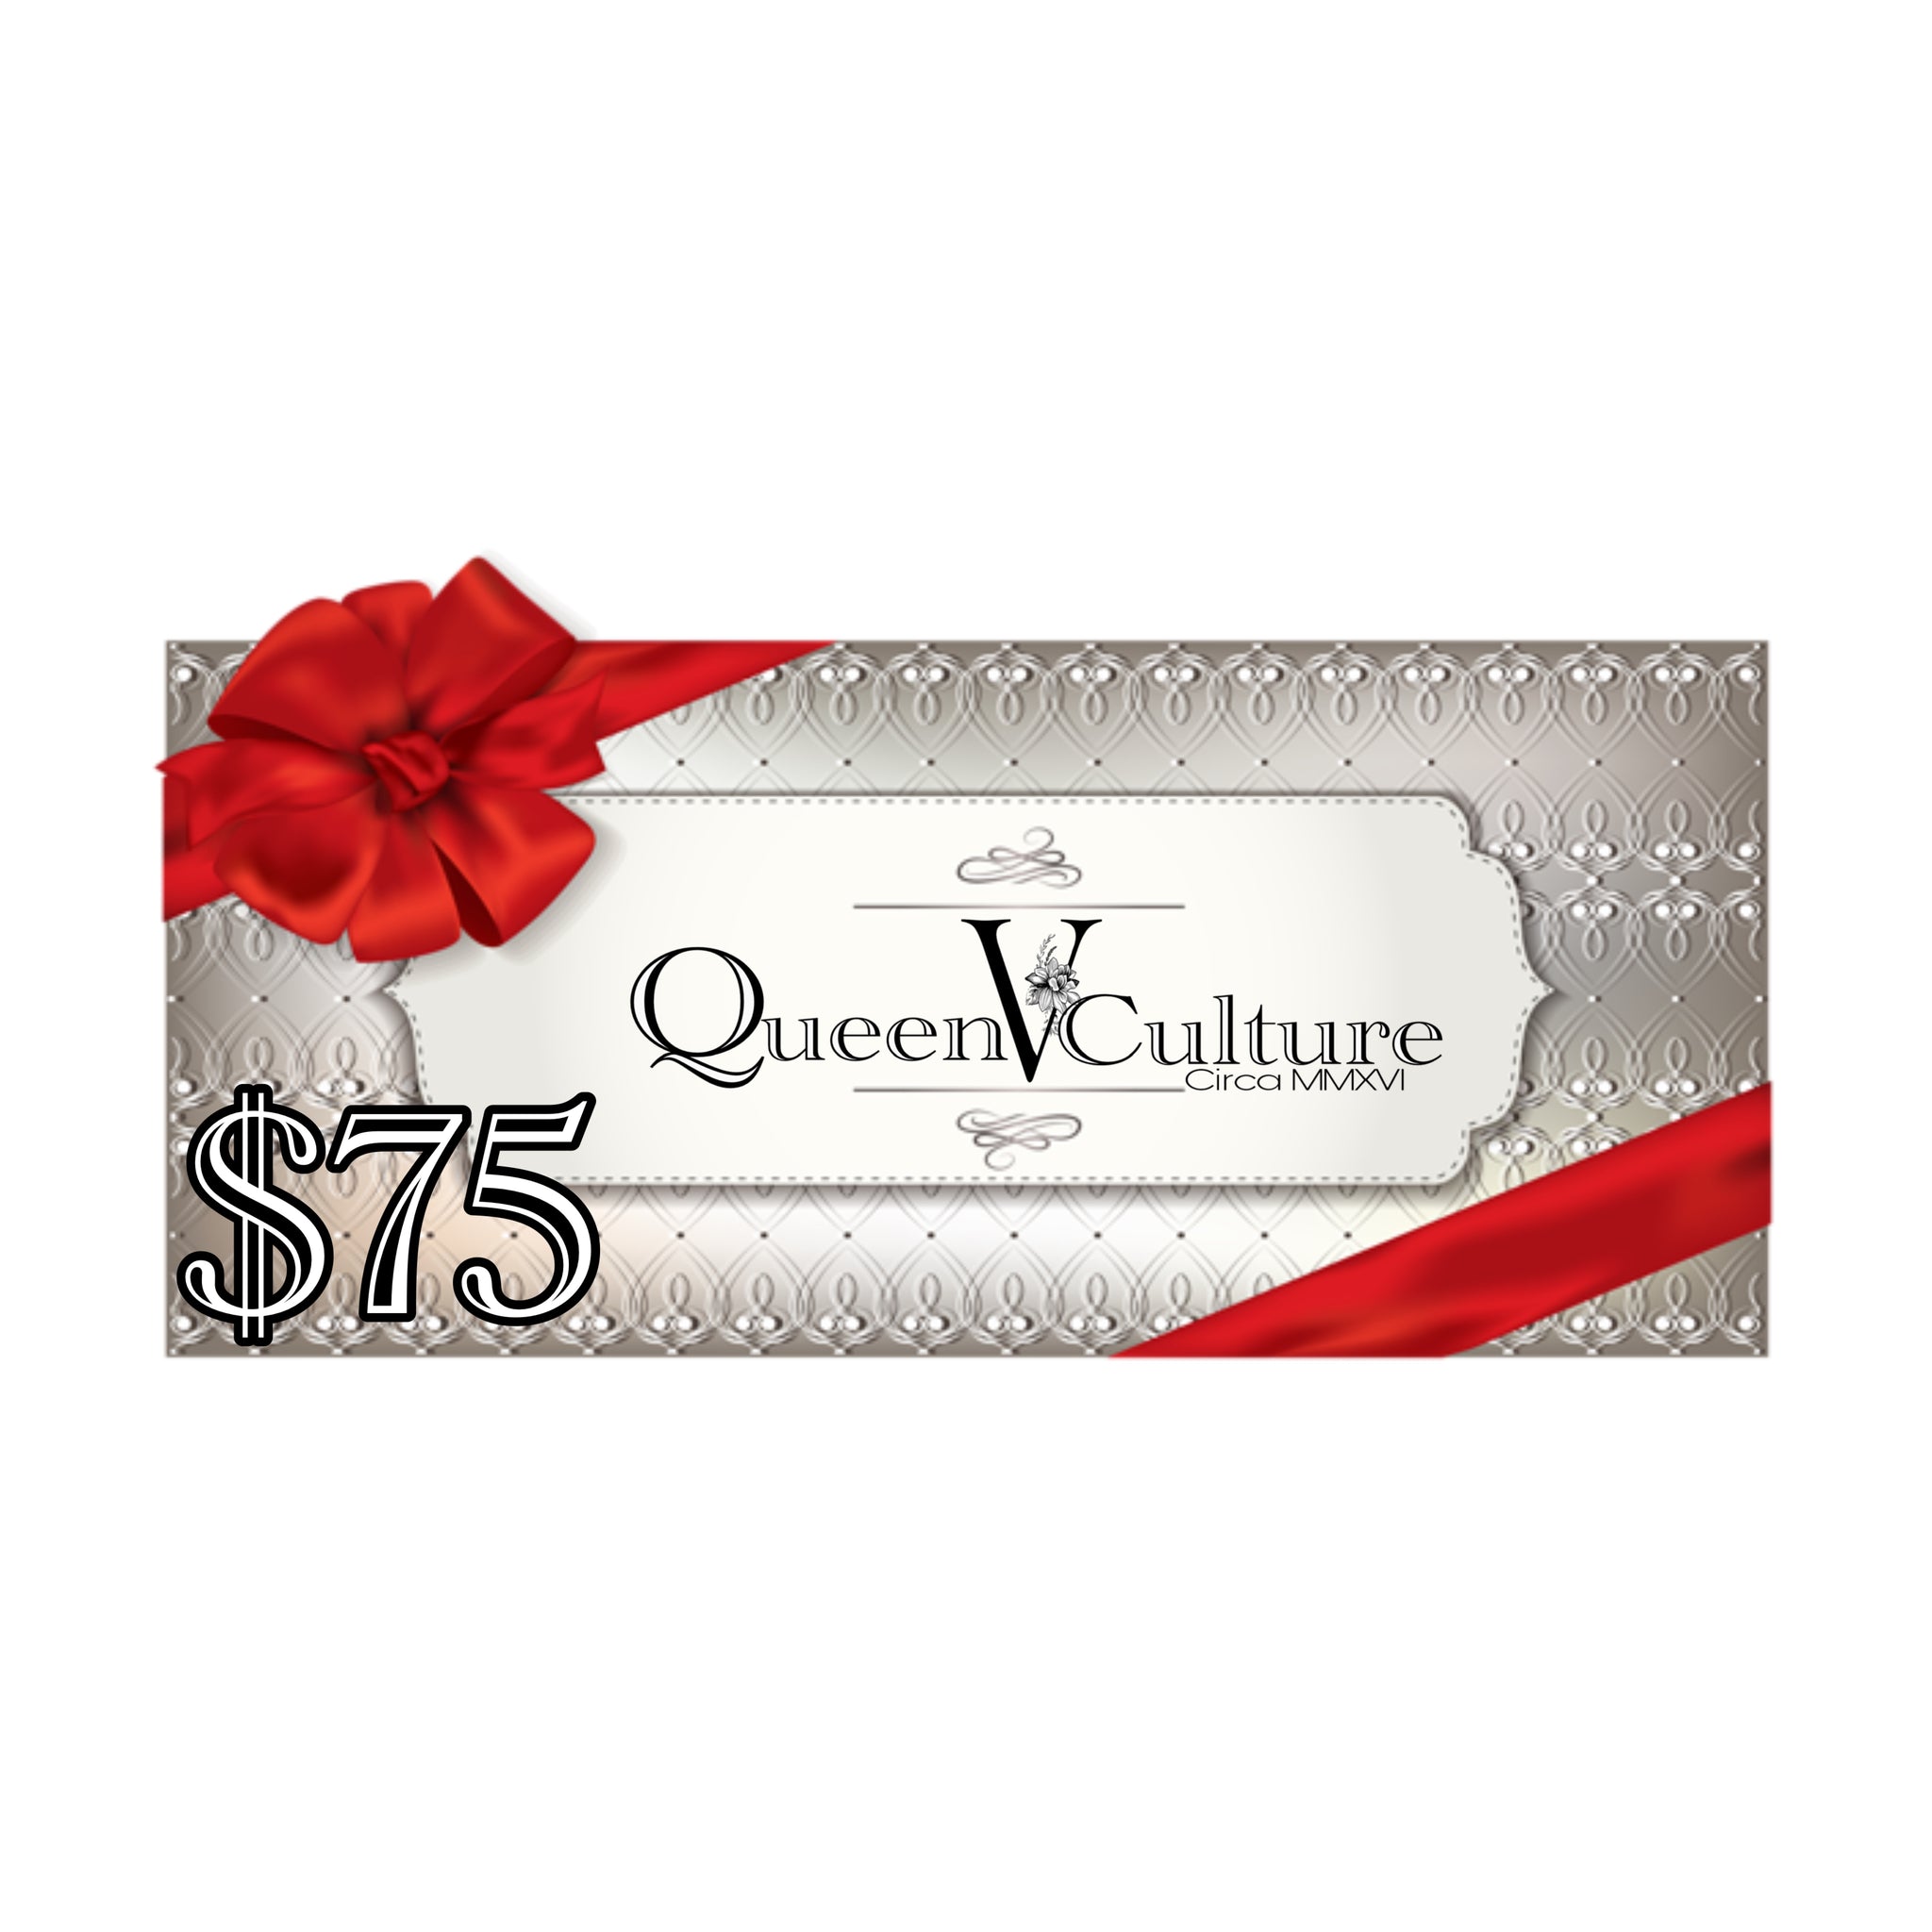 QueenVCulture Gem Cards